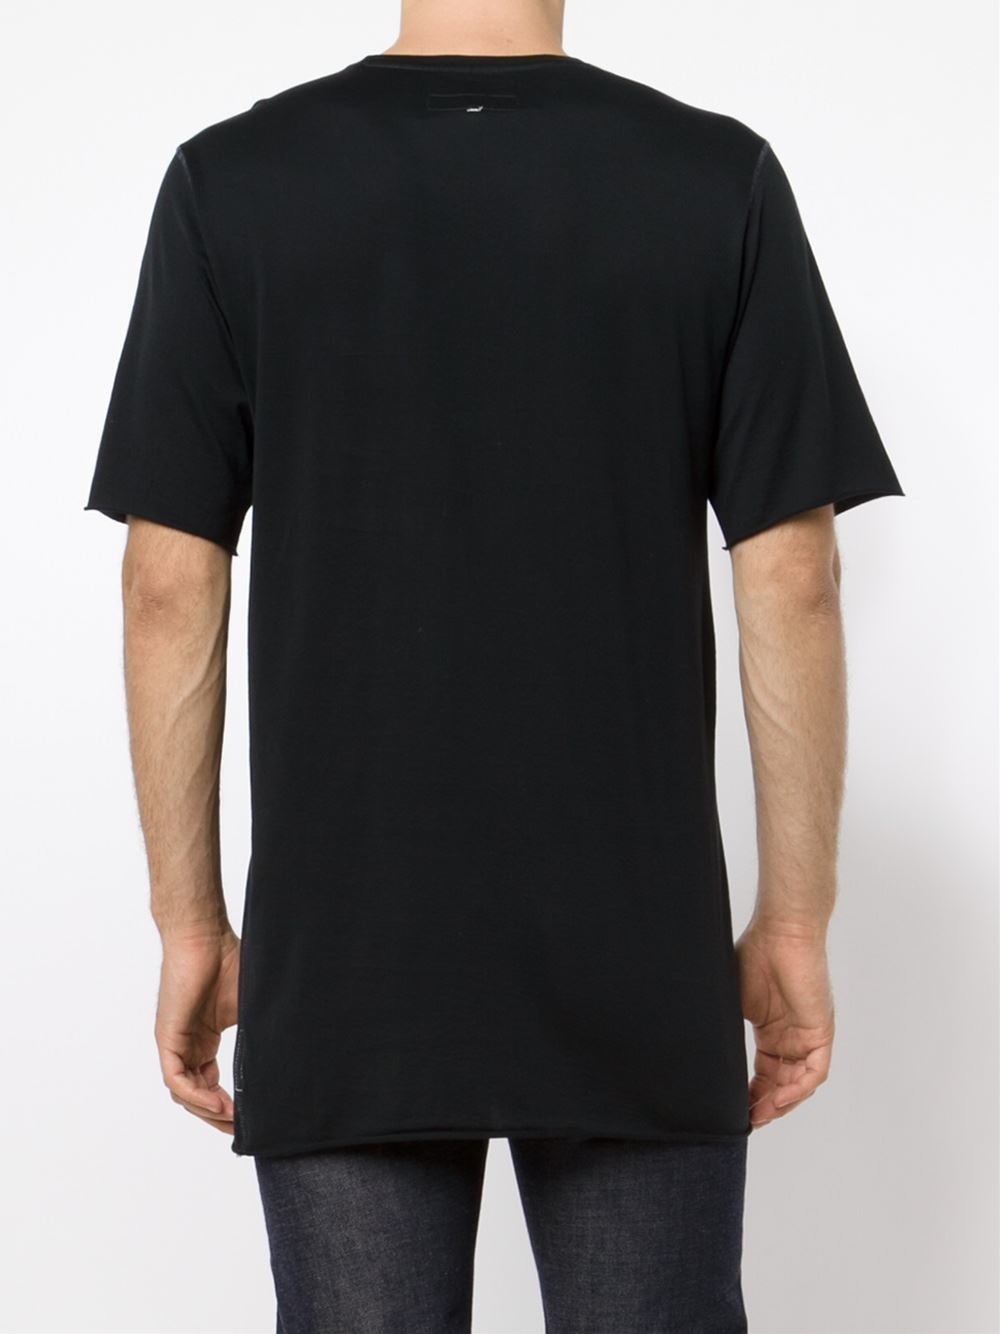 Rag & bone 'Marshall' T-Shirt in Black for Men | Lyst